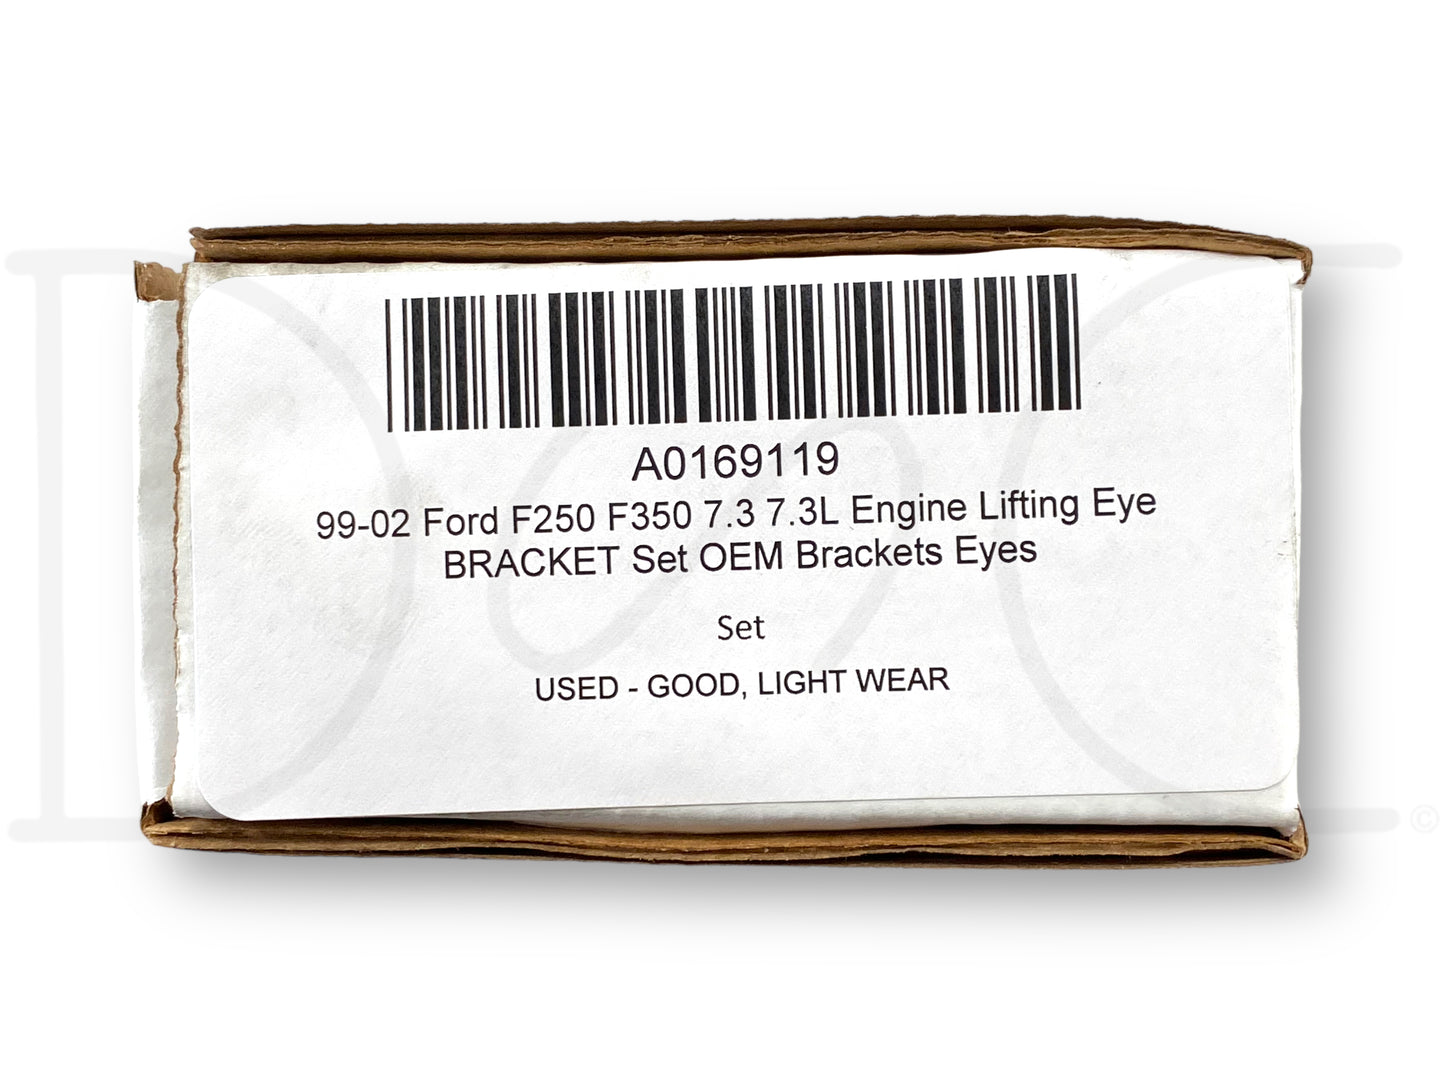 99-02 Ford F250 F350 7.3 7.3L Engine Lifting Eye Bracket Set OEM Brackets Eyes